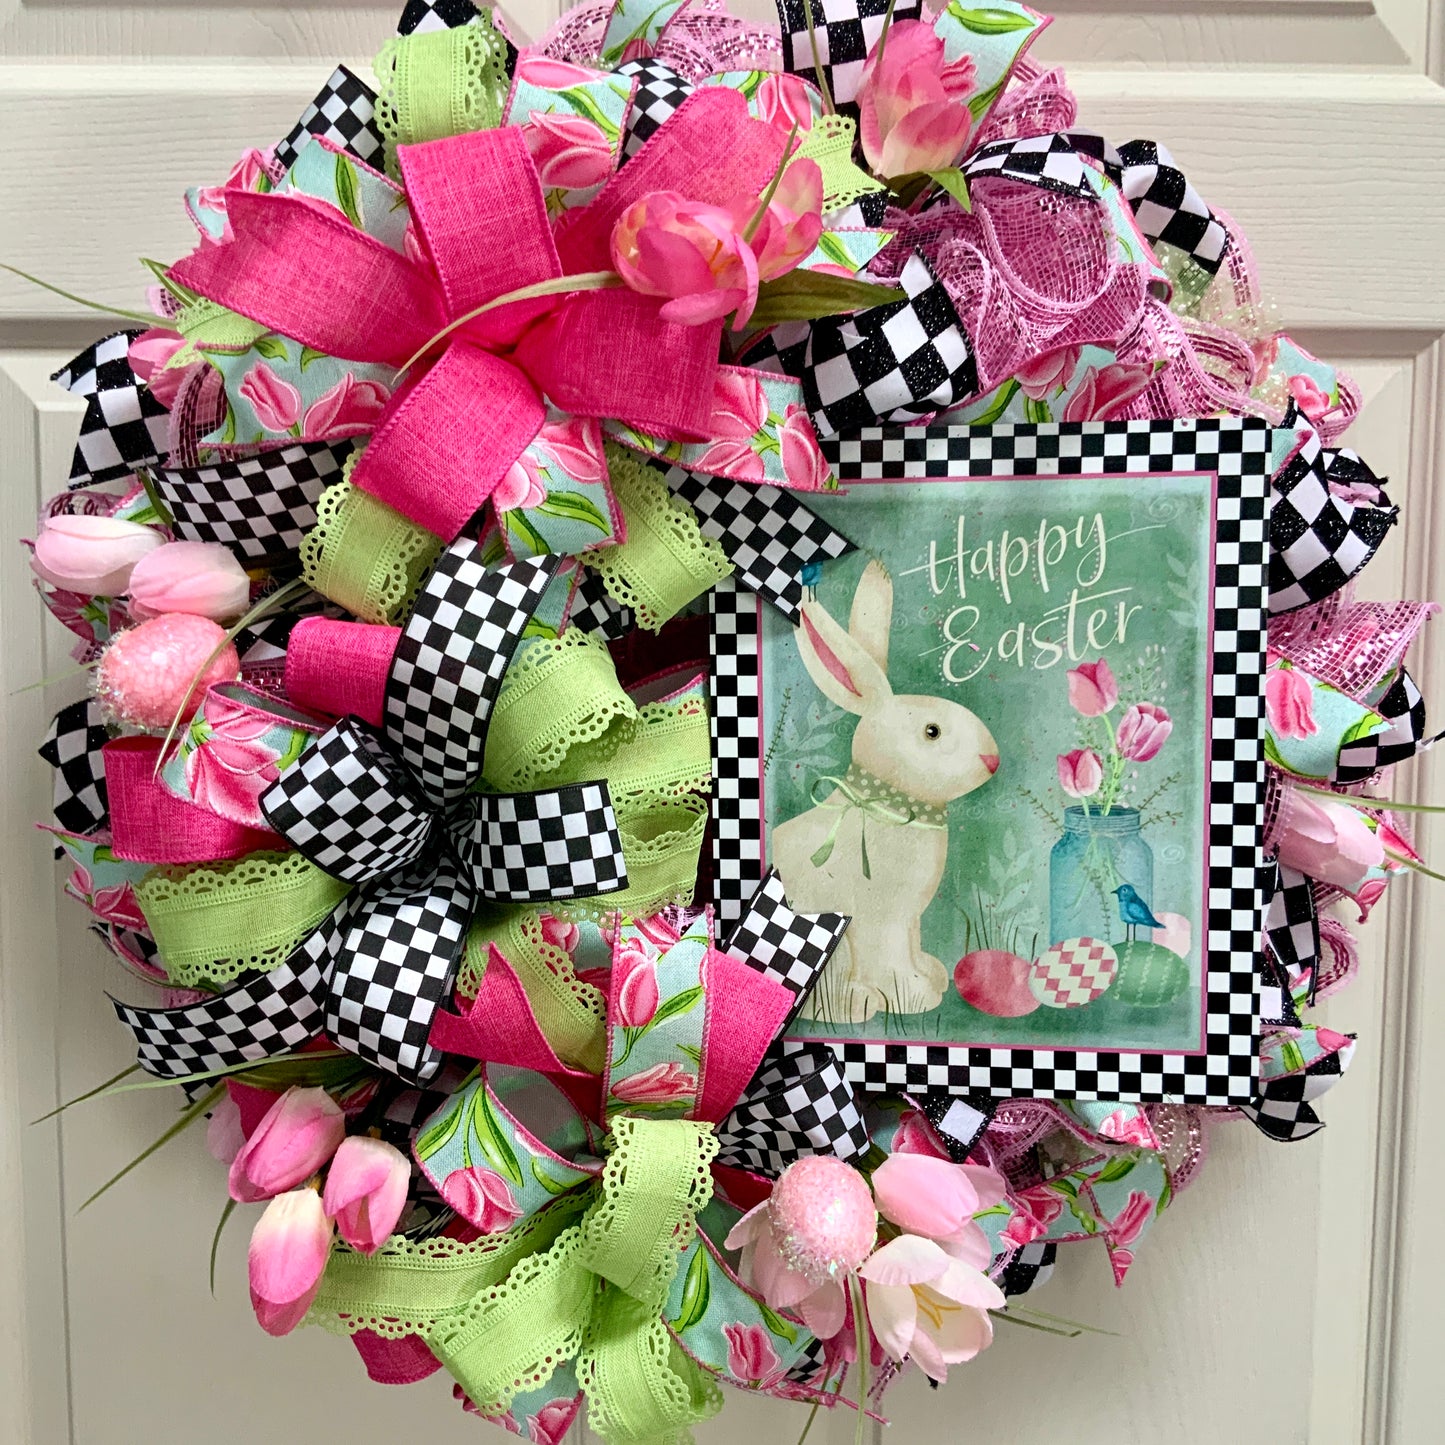 Easter Welcome Wreath, Happy Easter Wreath, Easter Rabbit Wreath, Easter Flower Wreath, Farmhouse Easter Decor For Front Door, Easter Door Hanger